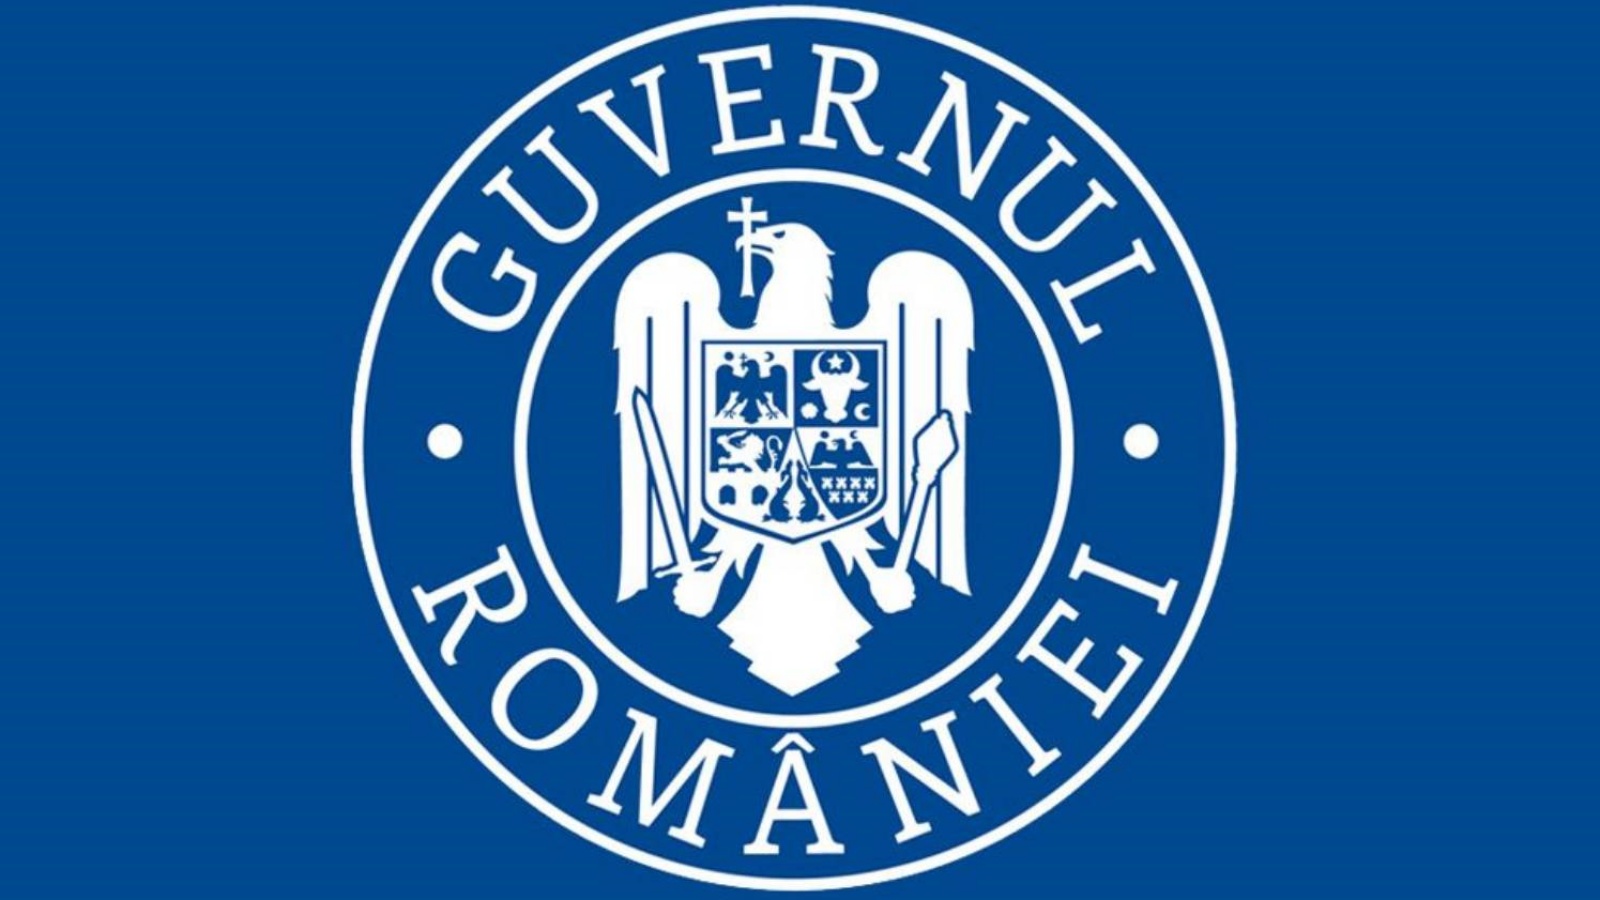 Het digitale inschrijfformulier voor Roemenië officieel aangekondigd door de regering